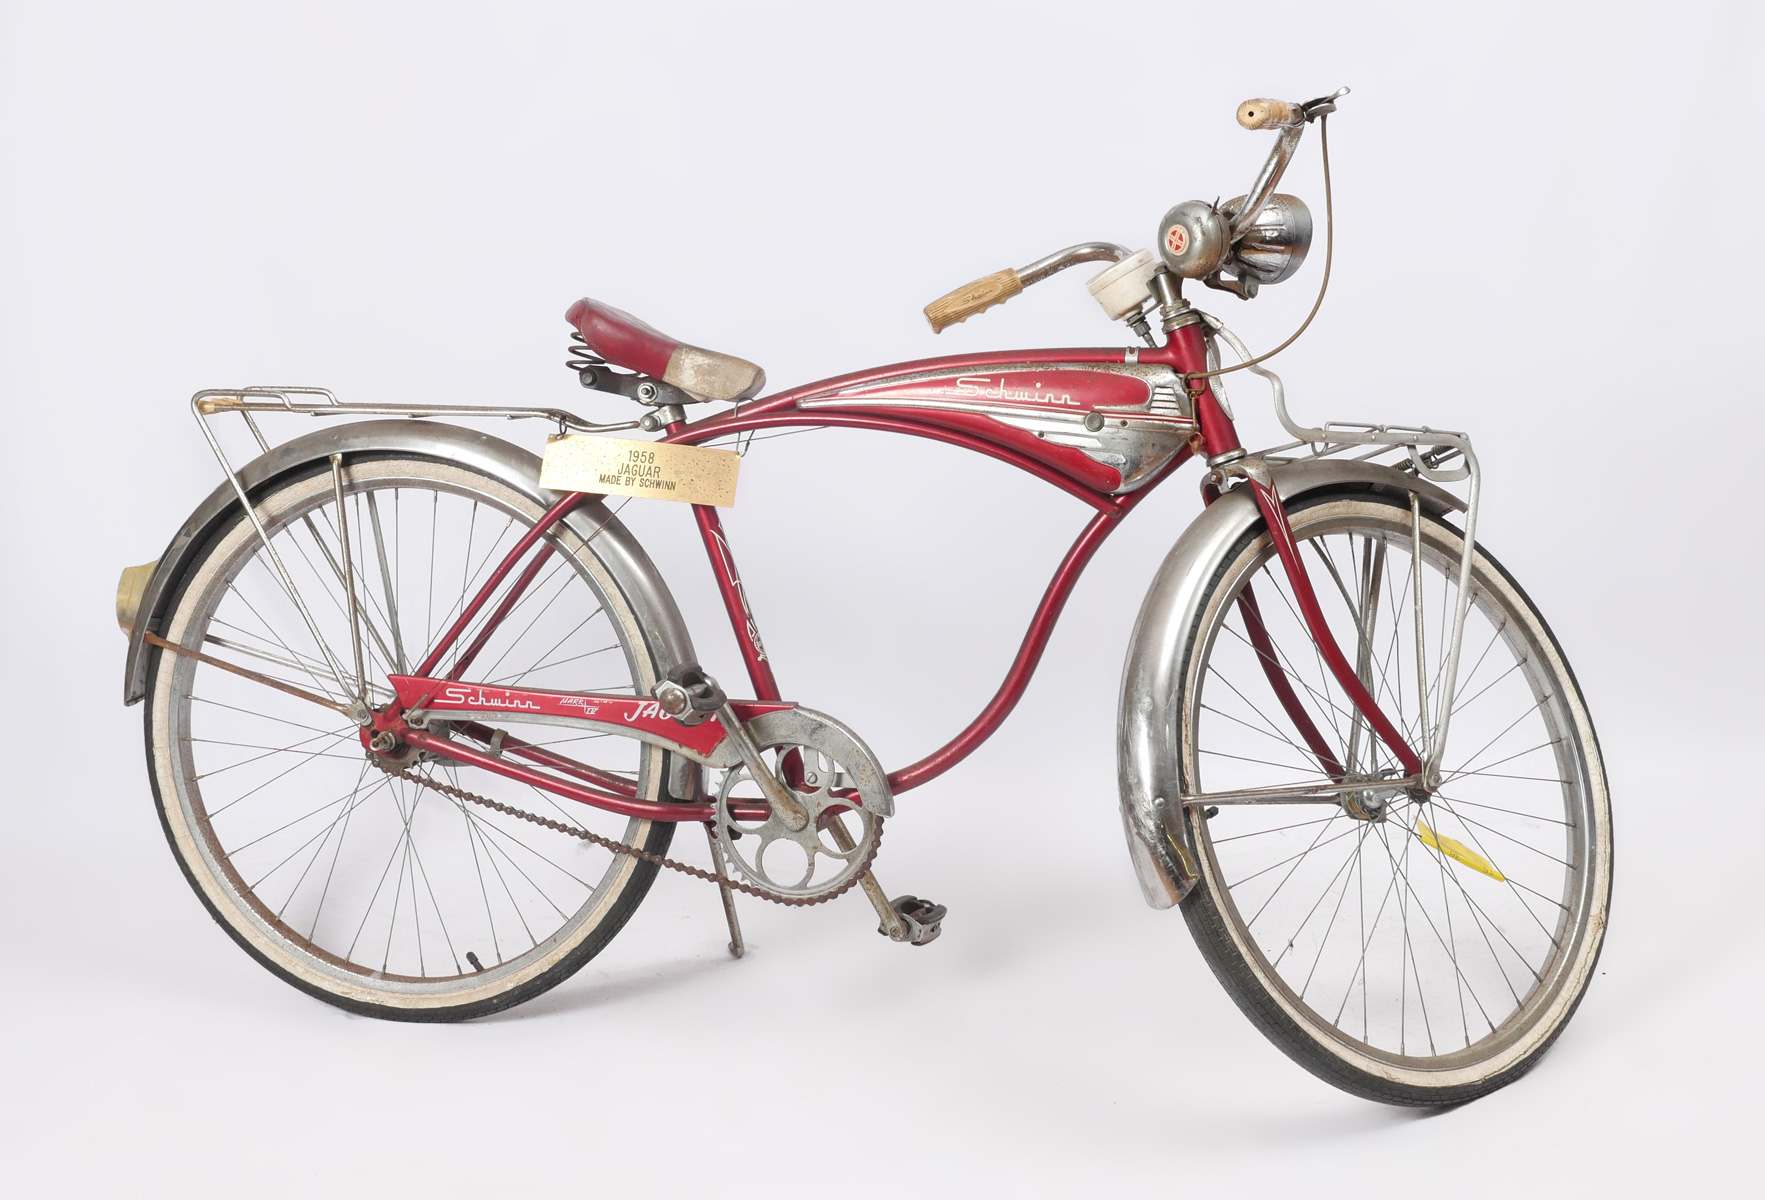 1958 SCHWINN JAGUAR BICYCLE  36e413